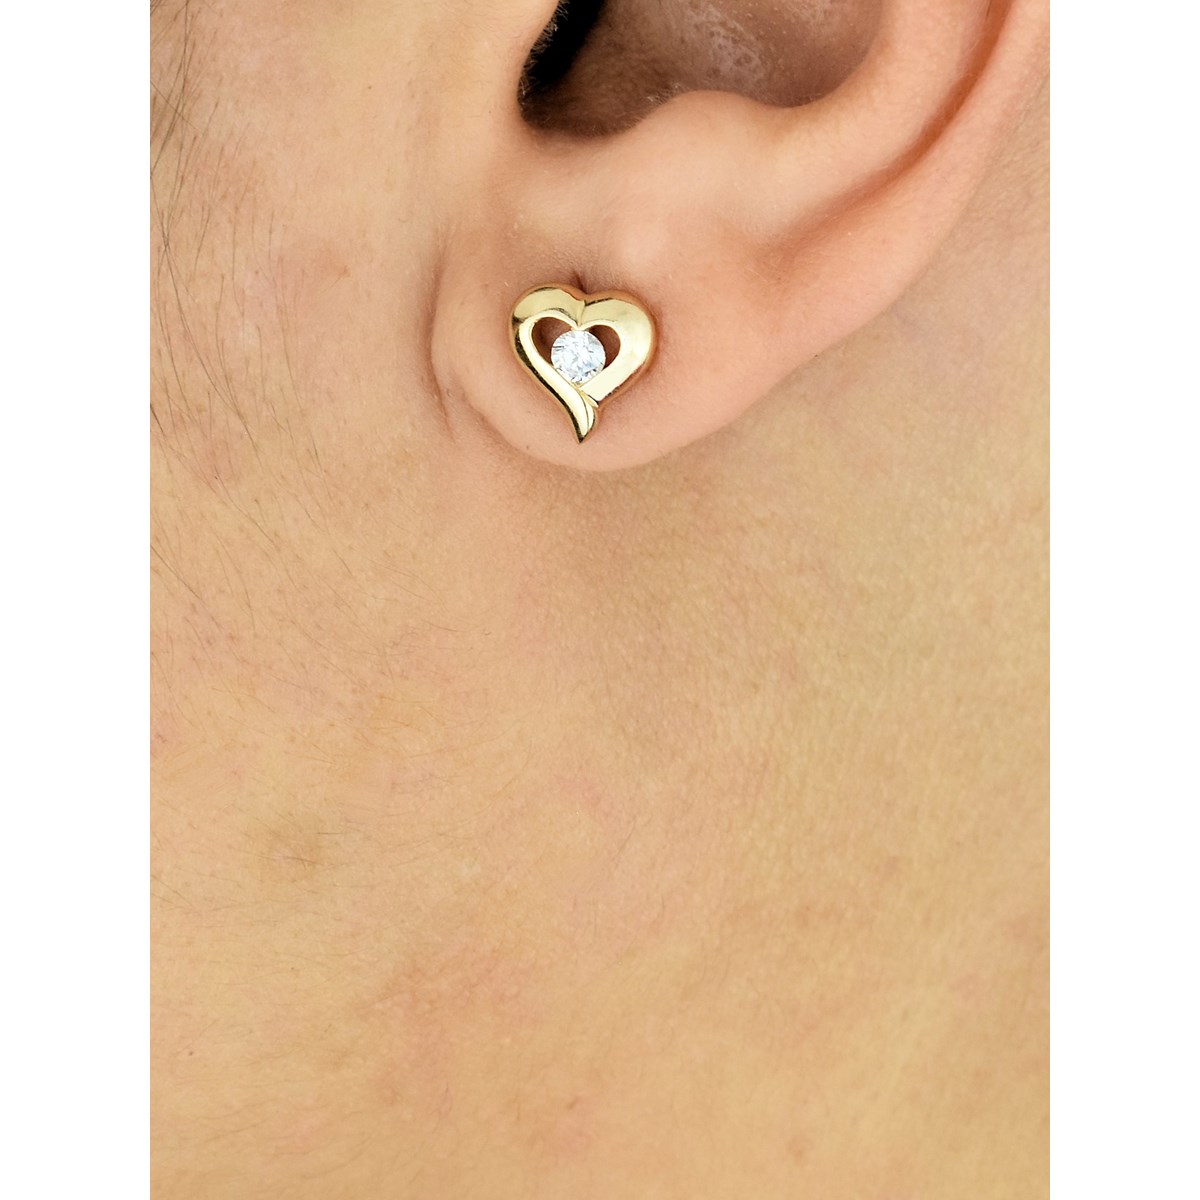 Boucles d'oreilles coeur oxyde de zirconium Plaqué OR 750 3 microns - vue 2